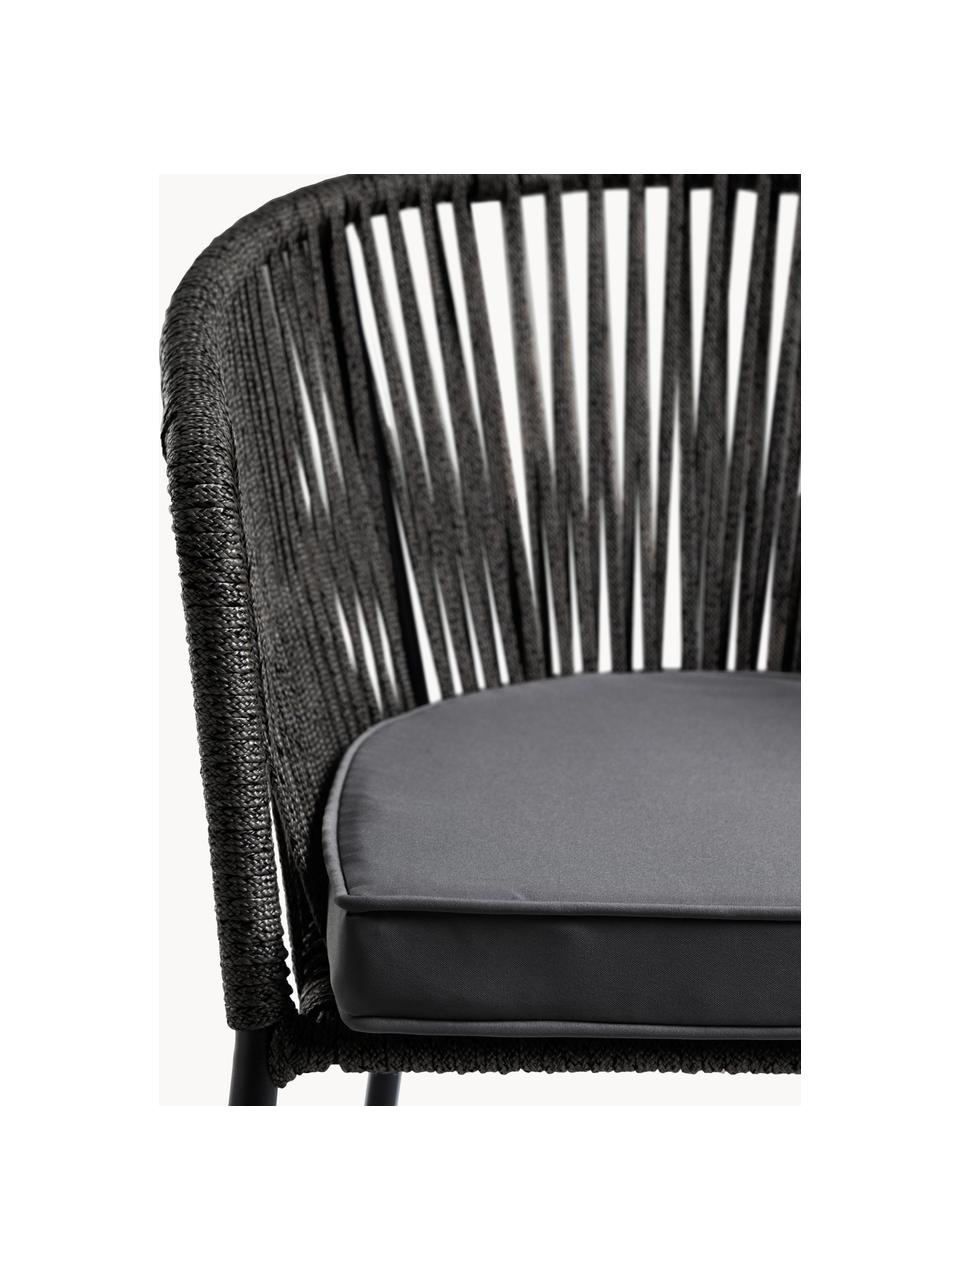 Krzesło ogrodowe Yanet, Stelaż: metal ocynkowany, Tapicerka: 100% poliester, Czarny, ciemnoszara tkanina, S 56 x G 55 cm